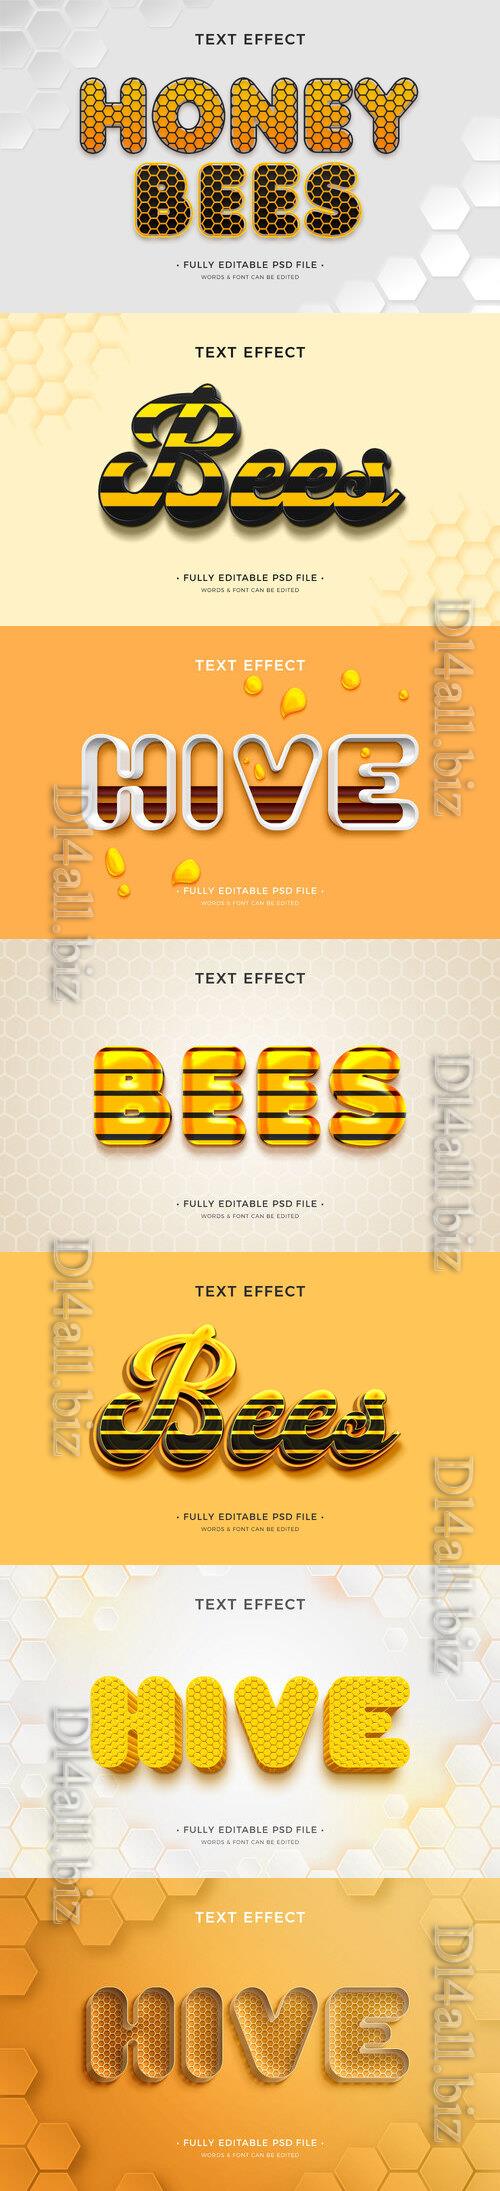 PSD honey bee text effect